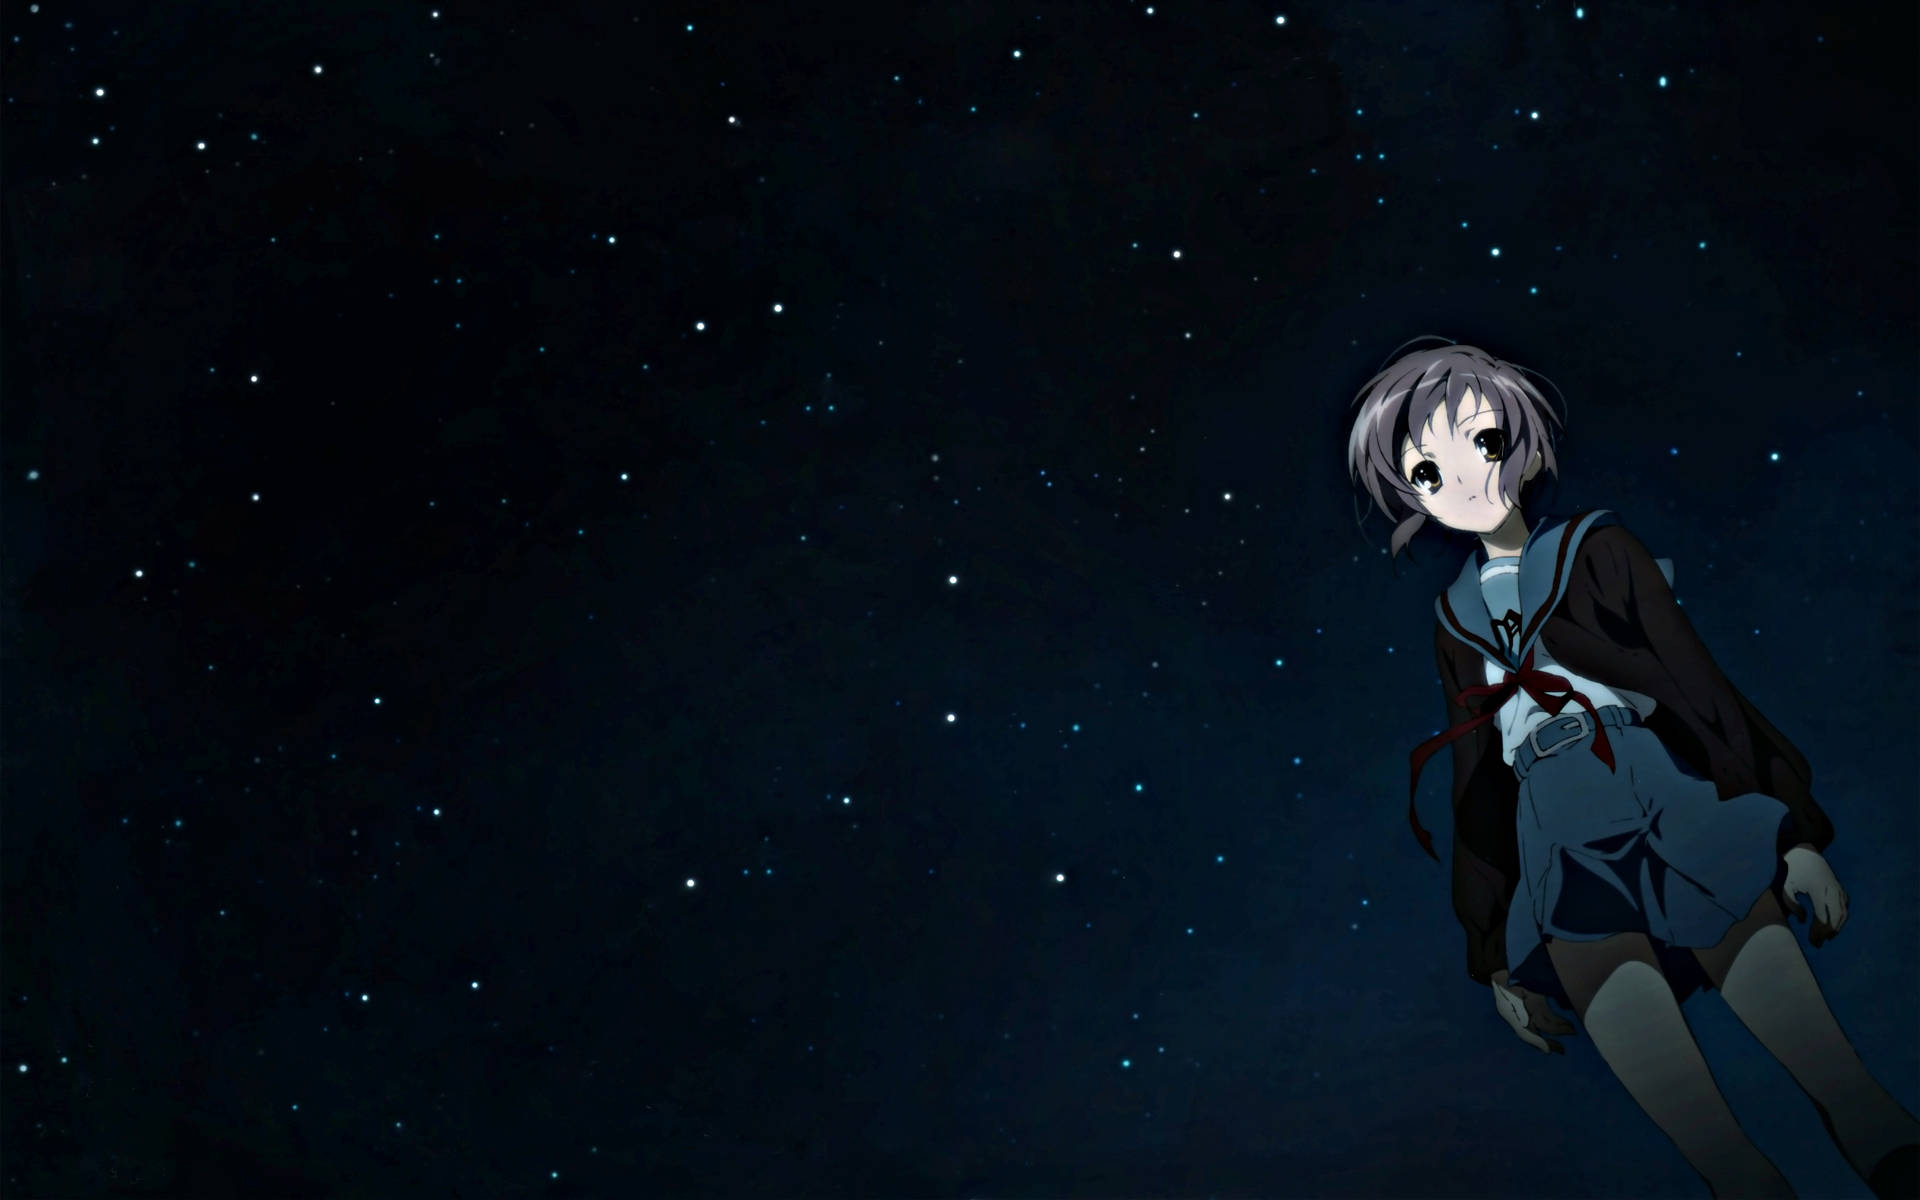 Anime Night Sky And Girl Wallpaper